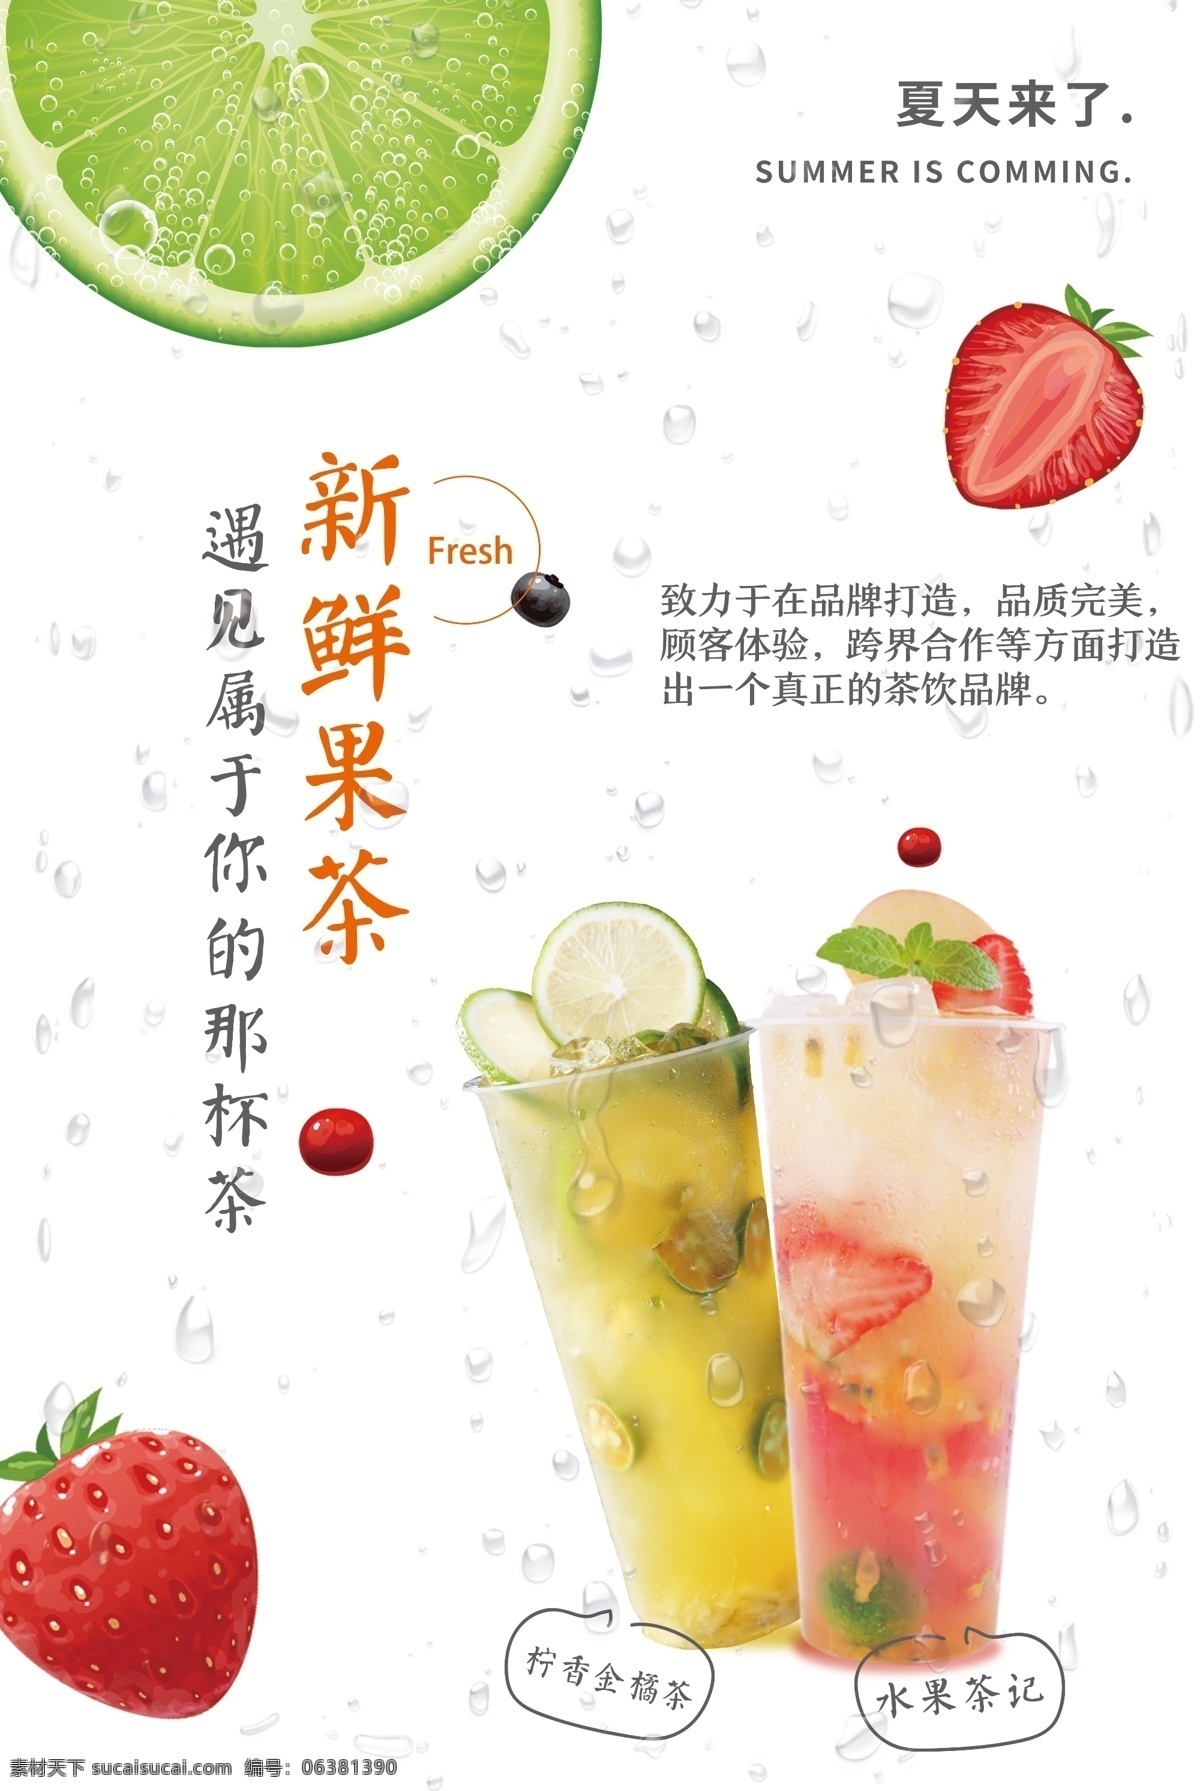 新鲜 果茶 饮品 促销 宣传海报 新鲜果茶 宣传 海报 饮料 甜品 类